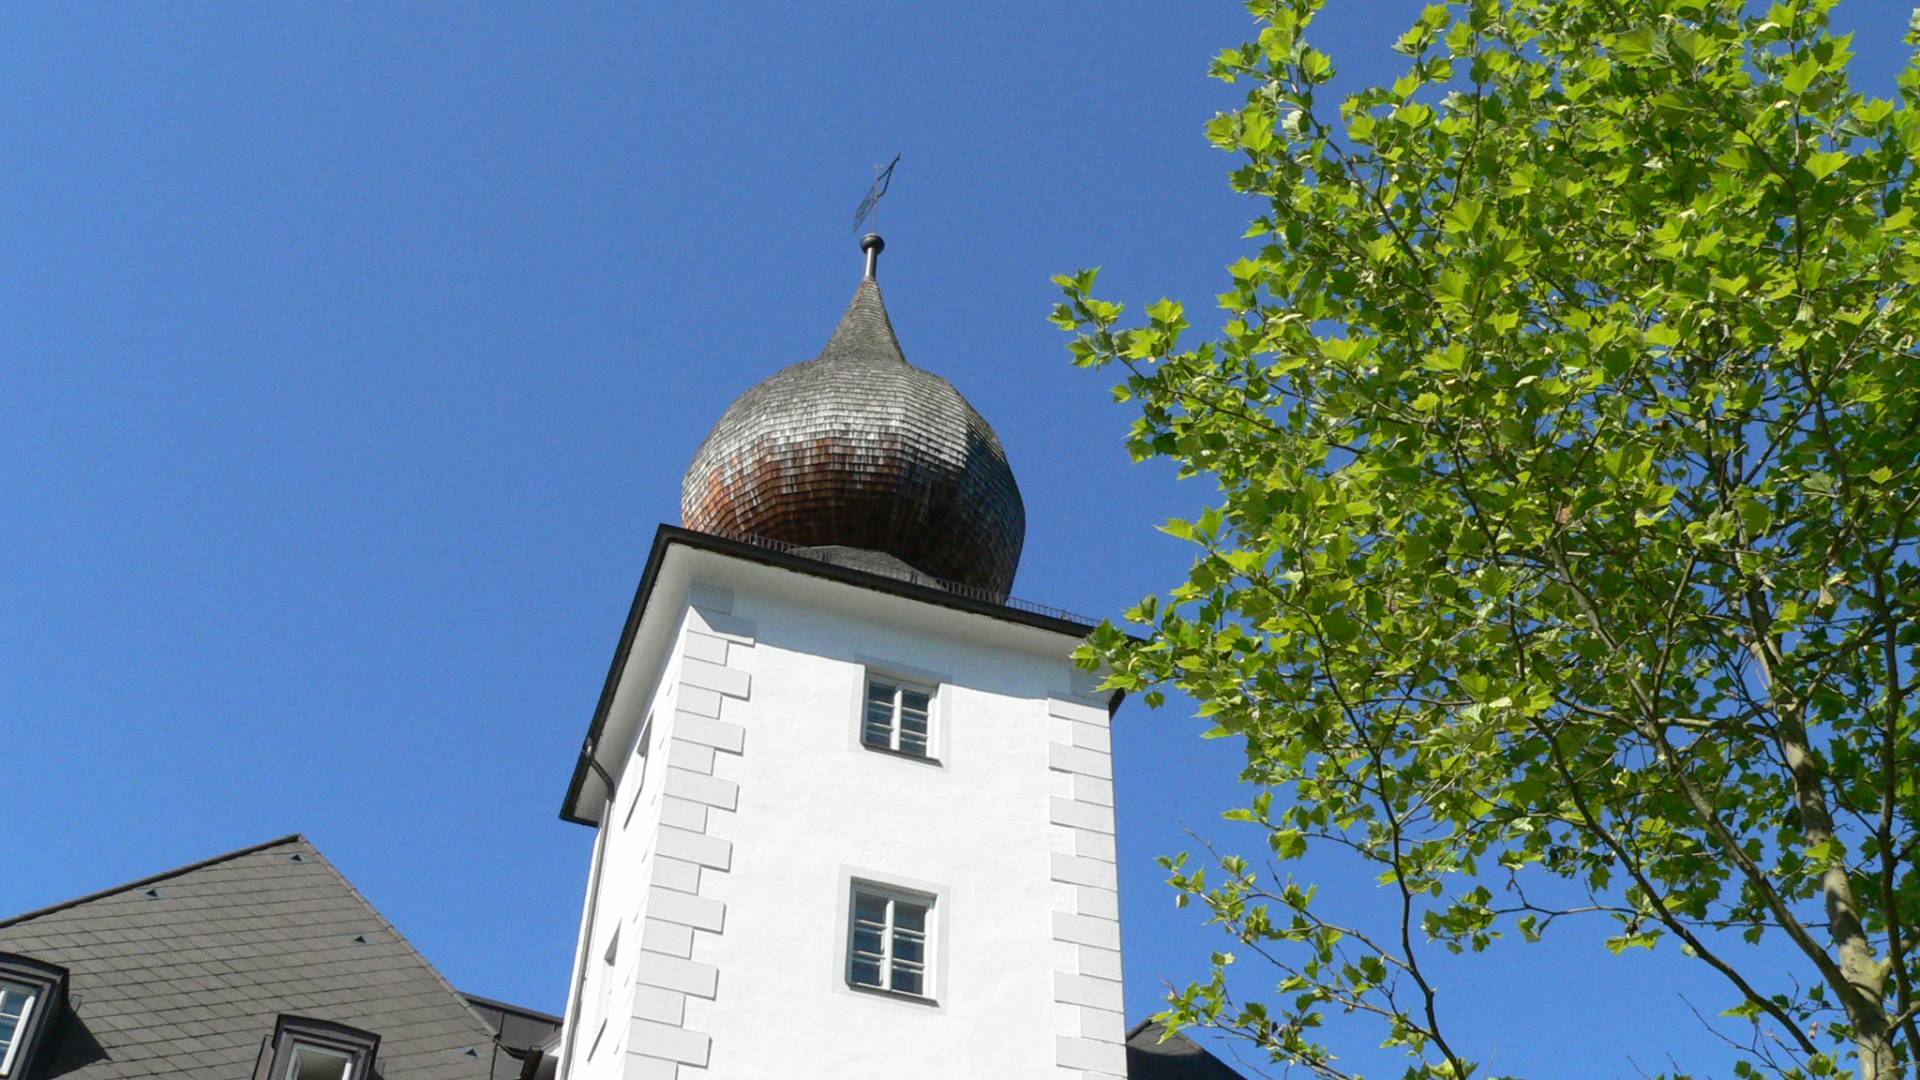 Turm vom Schloss in Niederösterreich